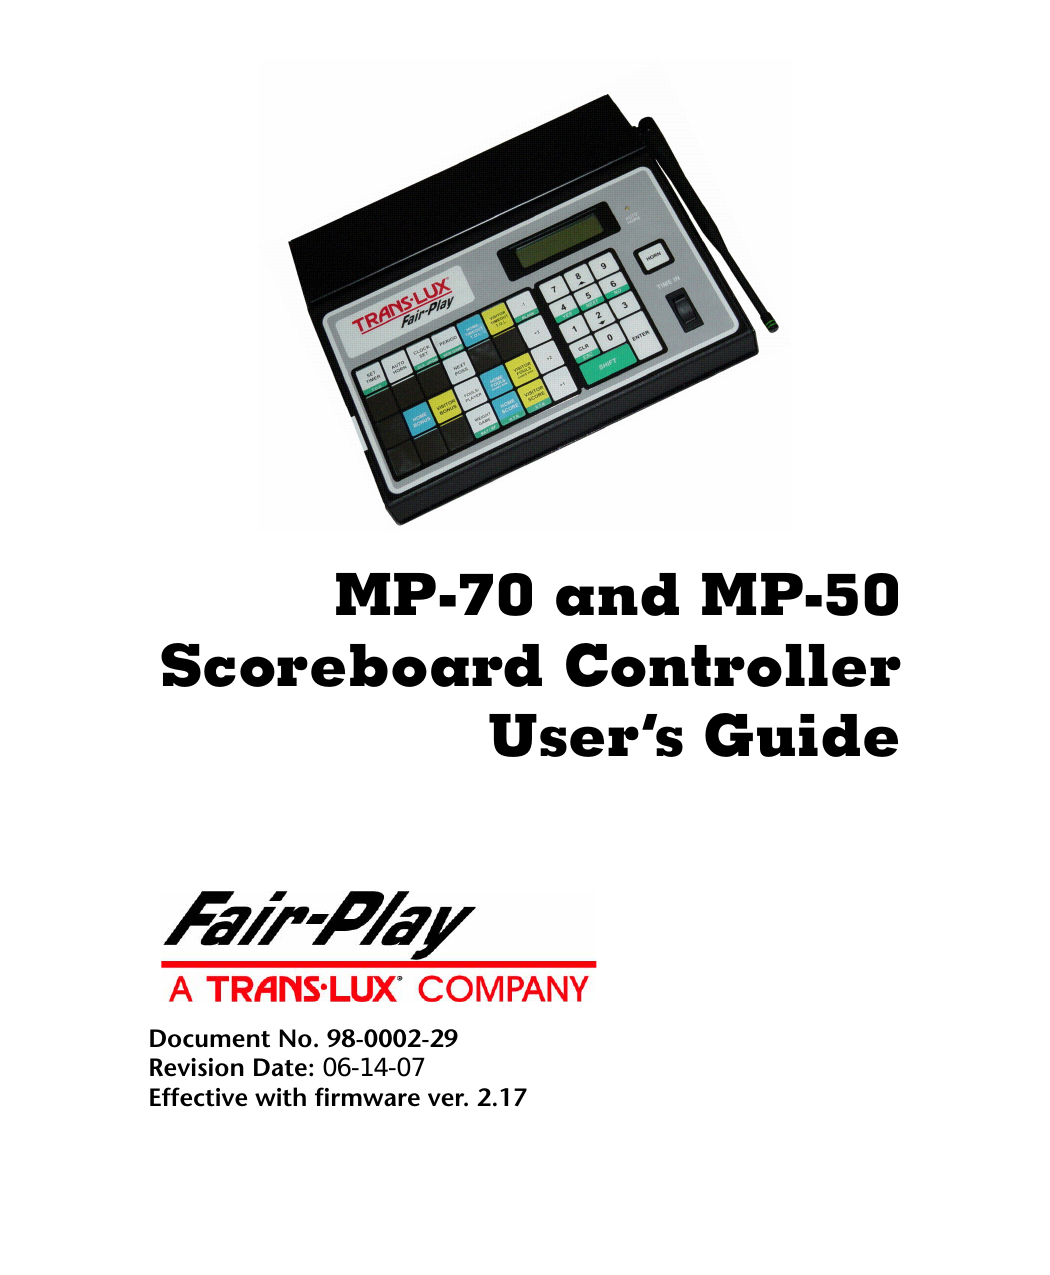 SC-8114-2 Soccer Scoreboard - Fair-Play Scoreboards